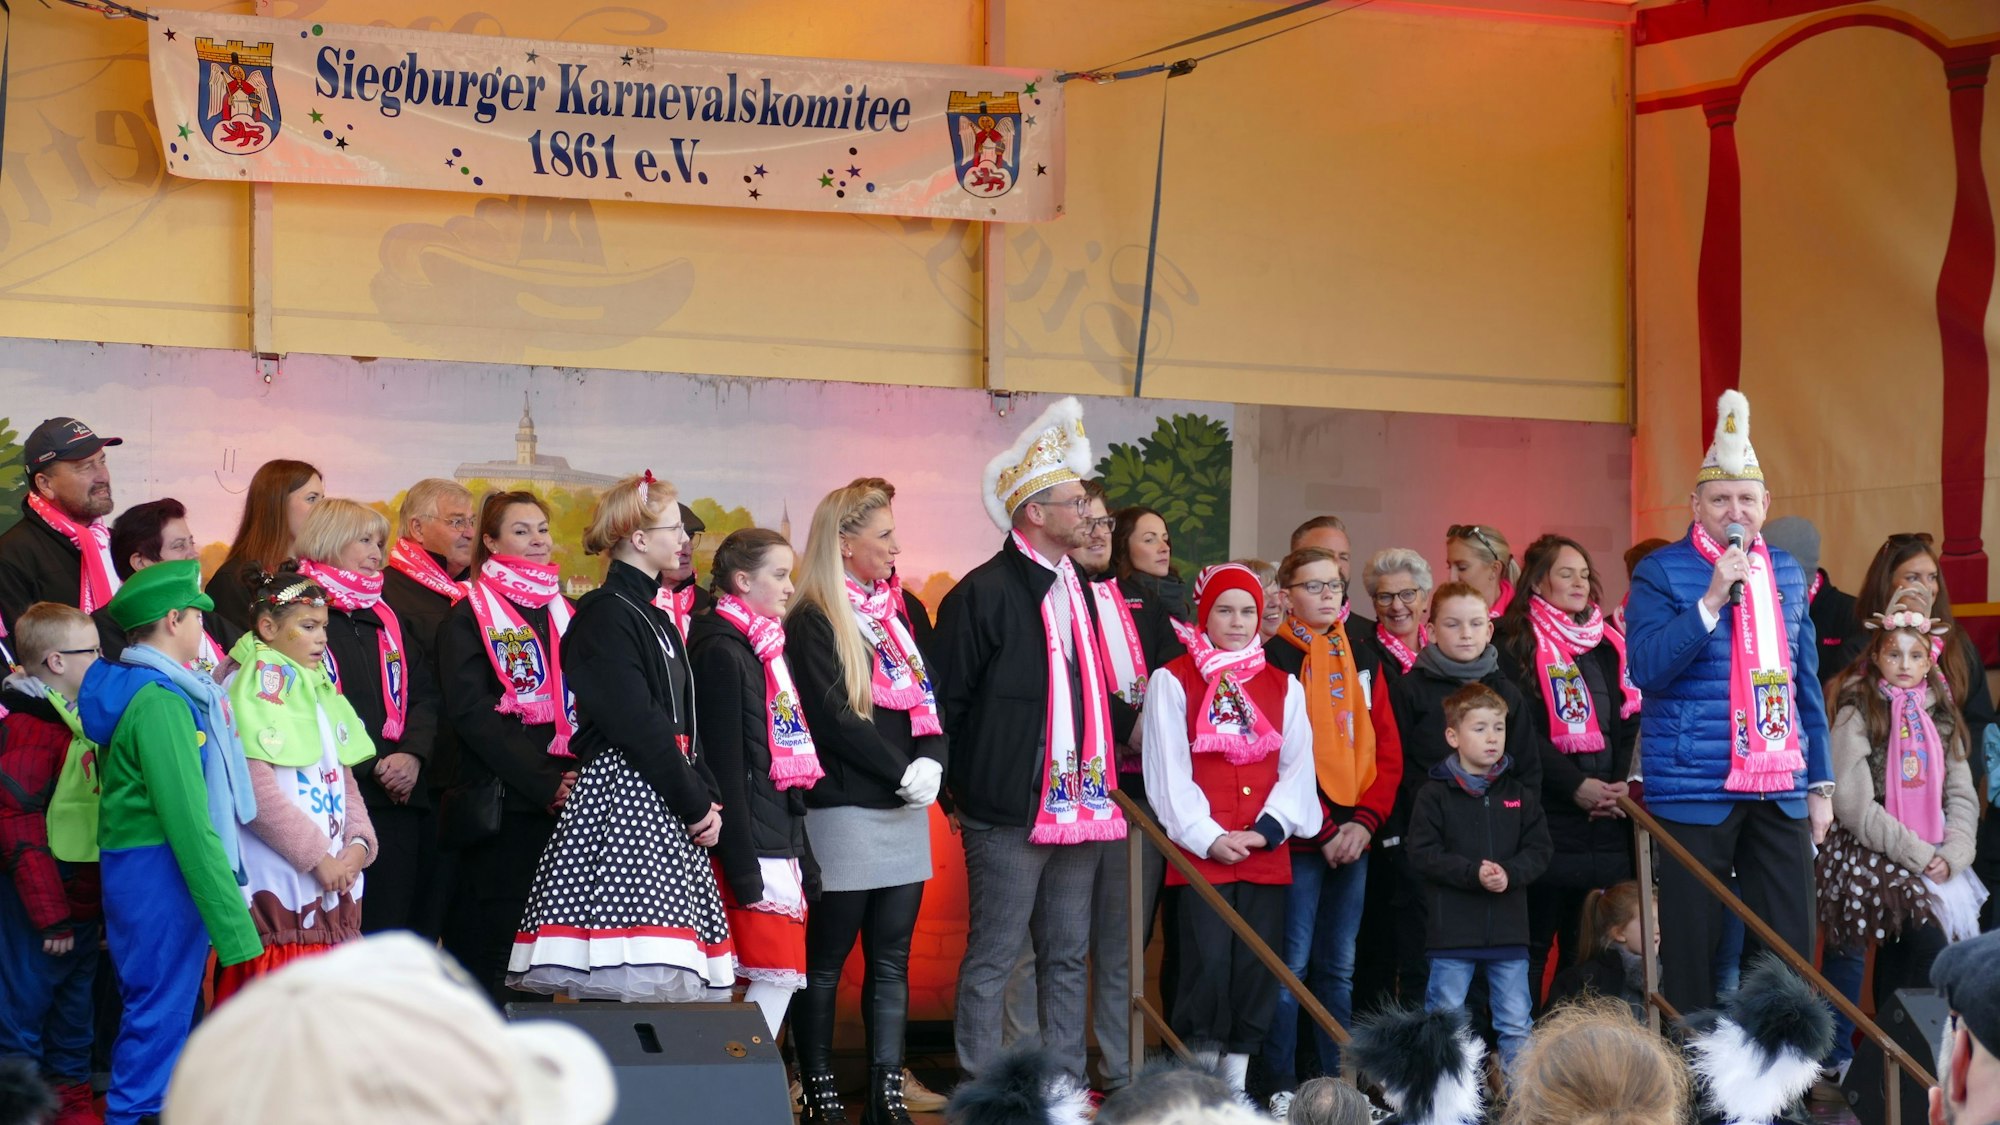 Der Karnevalsprinz, die Siegburgia und sein Gefolge stehen auf der Bühne. Sie tragen Schals in Weiß und Rosa.